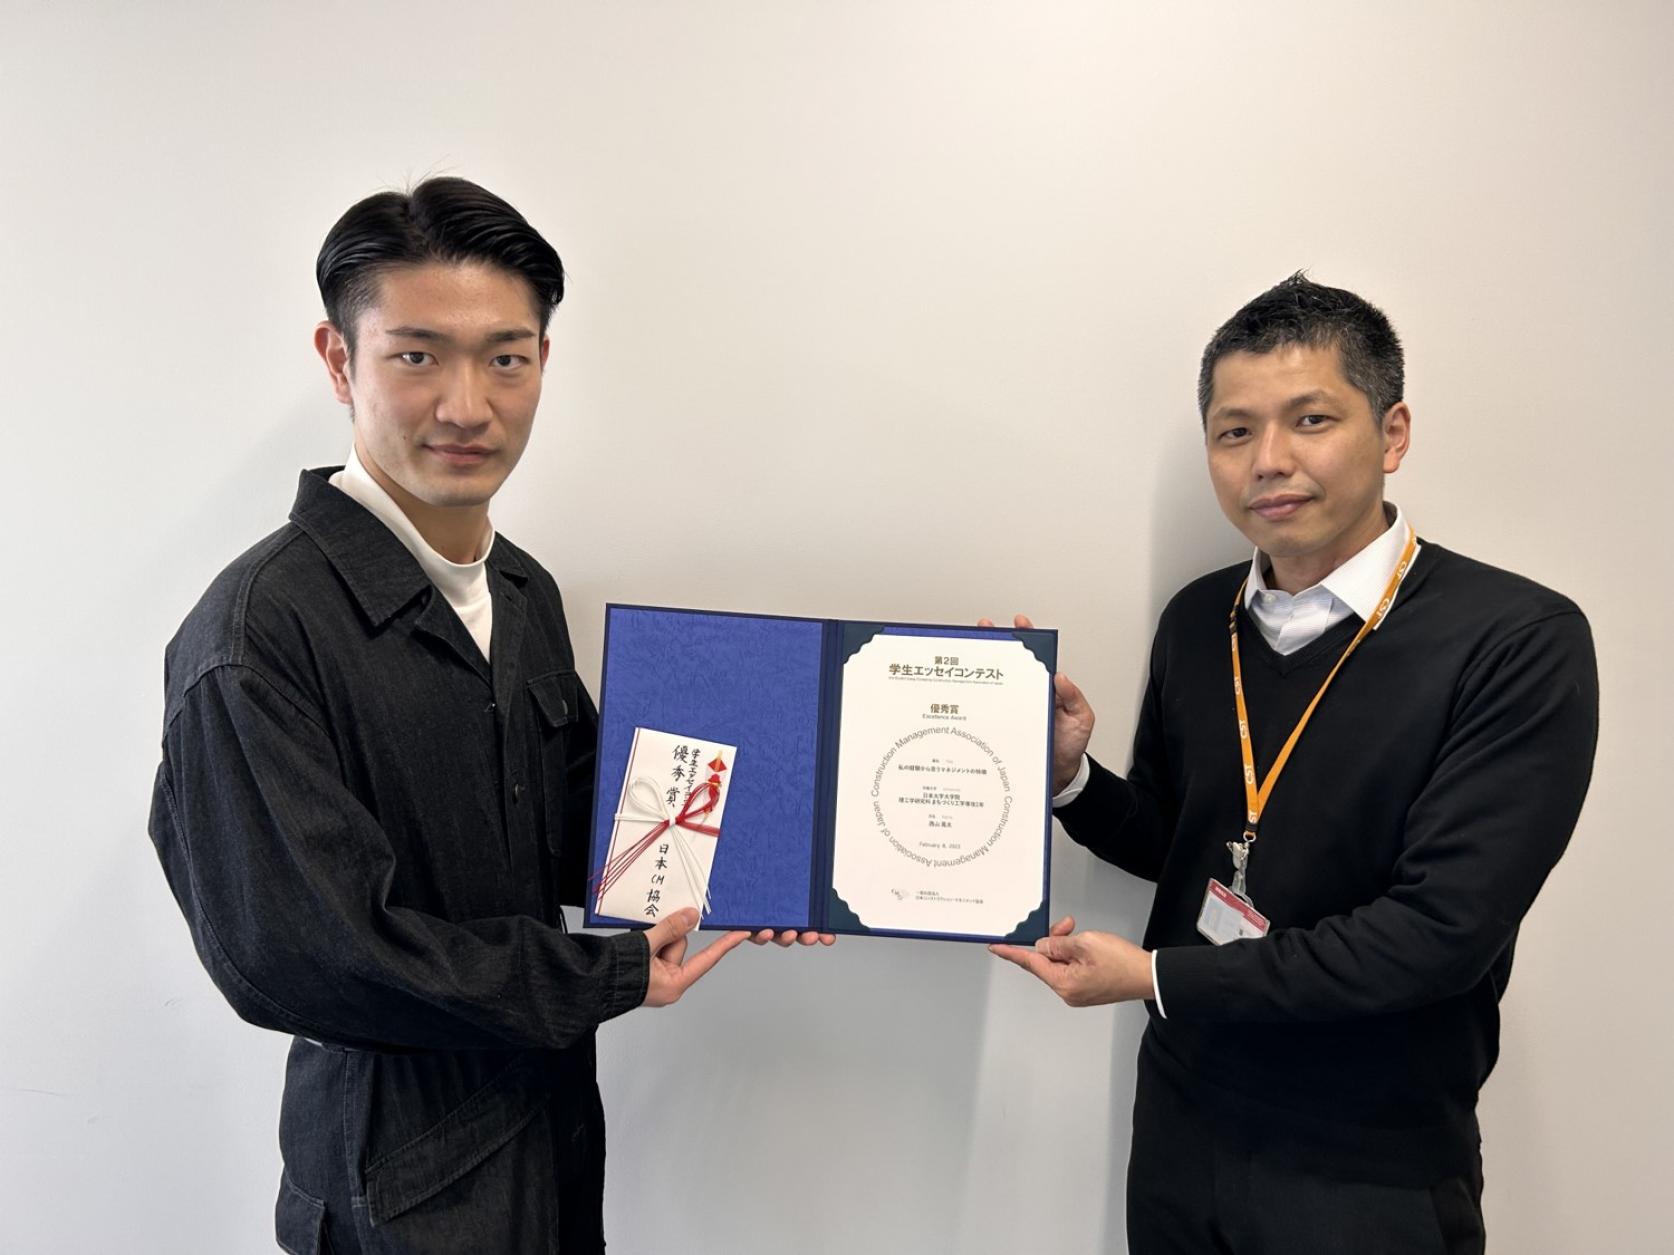 まちづくり工学専攻1年の西山晃太さんが、日本コンストラクション・マネジメント協会 第2回学生エッセイコンテスト 2022年度において、優秀賞を受賞しました。